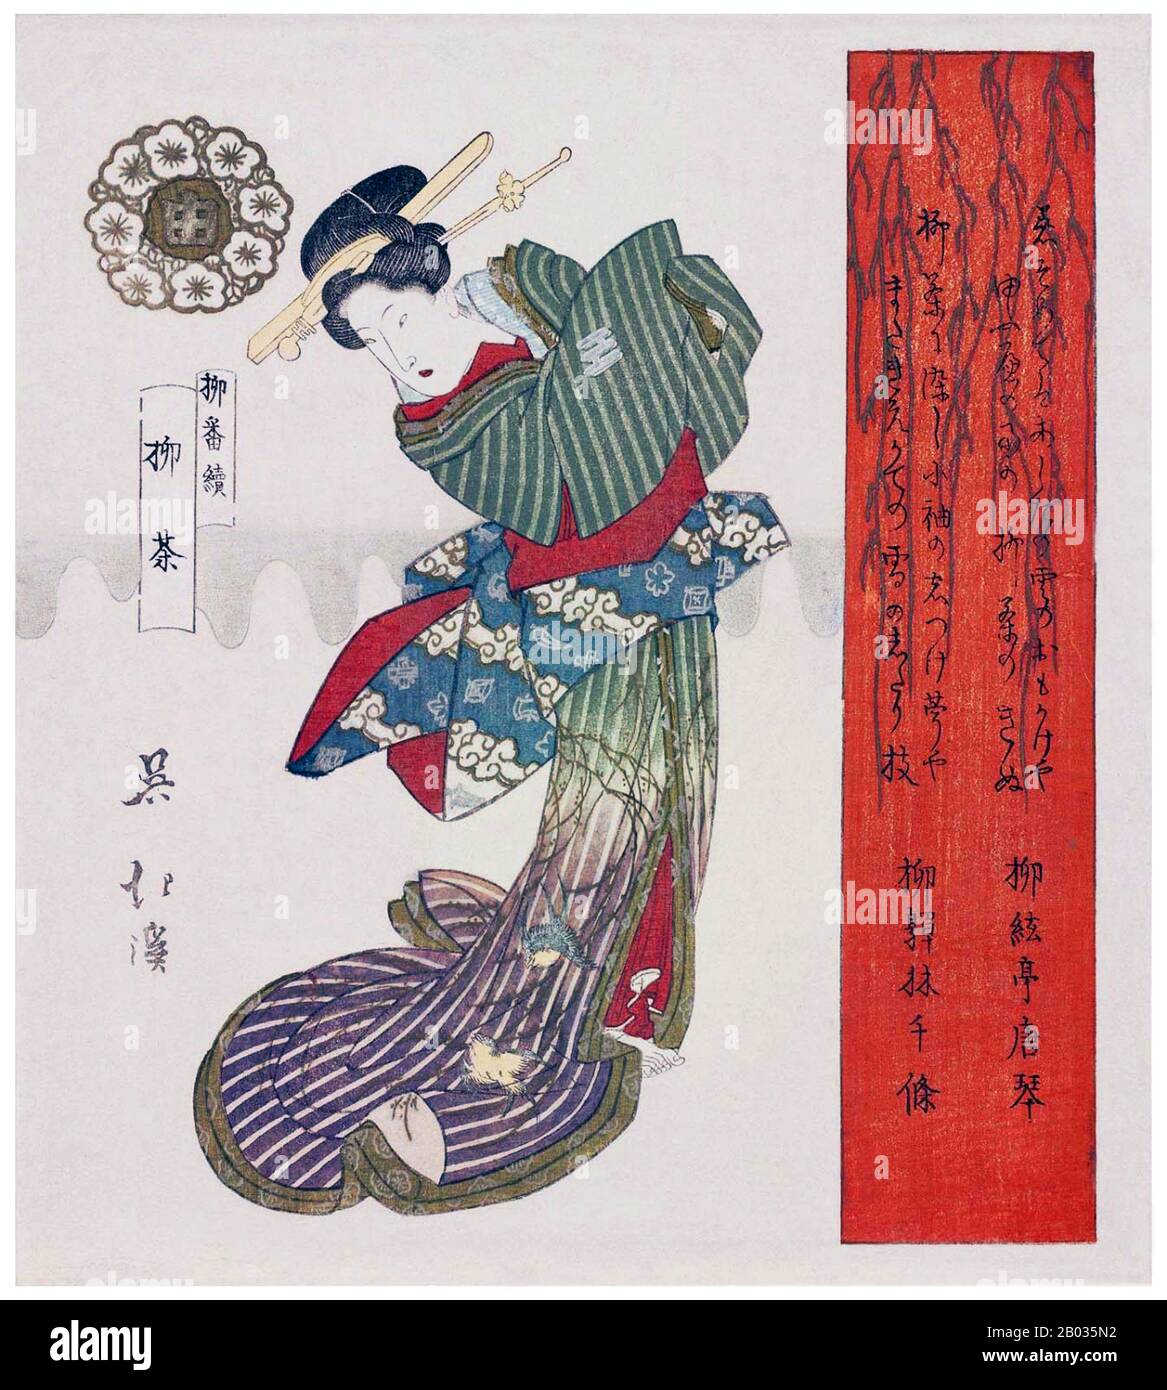 Totoya Hokkei était un auteur japonais de printMaker et illustrateur de livre. Il a d'abord étudié la peinture avec Kano Yosen (1735-1808), le chef de la branche Kobikicho de l'école Kano et okaeshi (peintre officiel) au shogunat Tokugawa. Avec Teisai Hokuba (1771-1844), Hokkei était l'un des meilleurs étudiants de Katsushika Hokusai. Banque D'Images